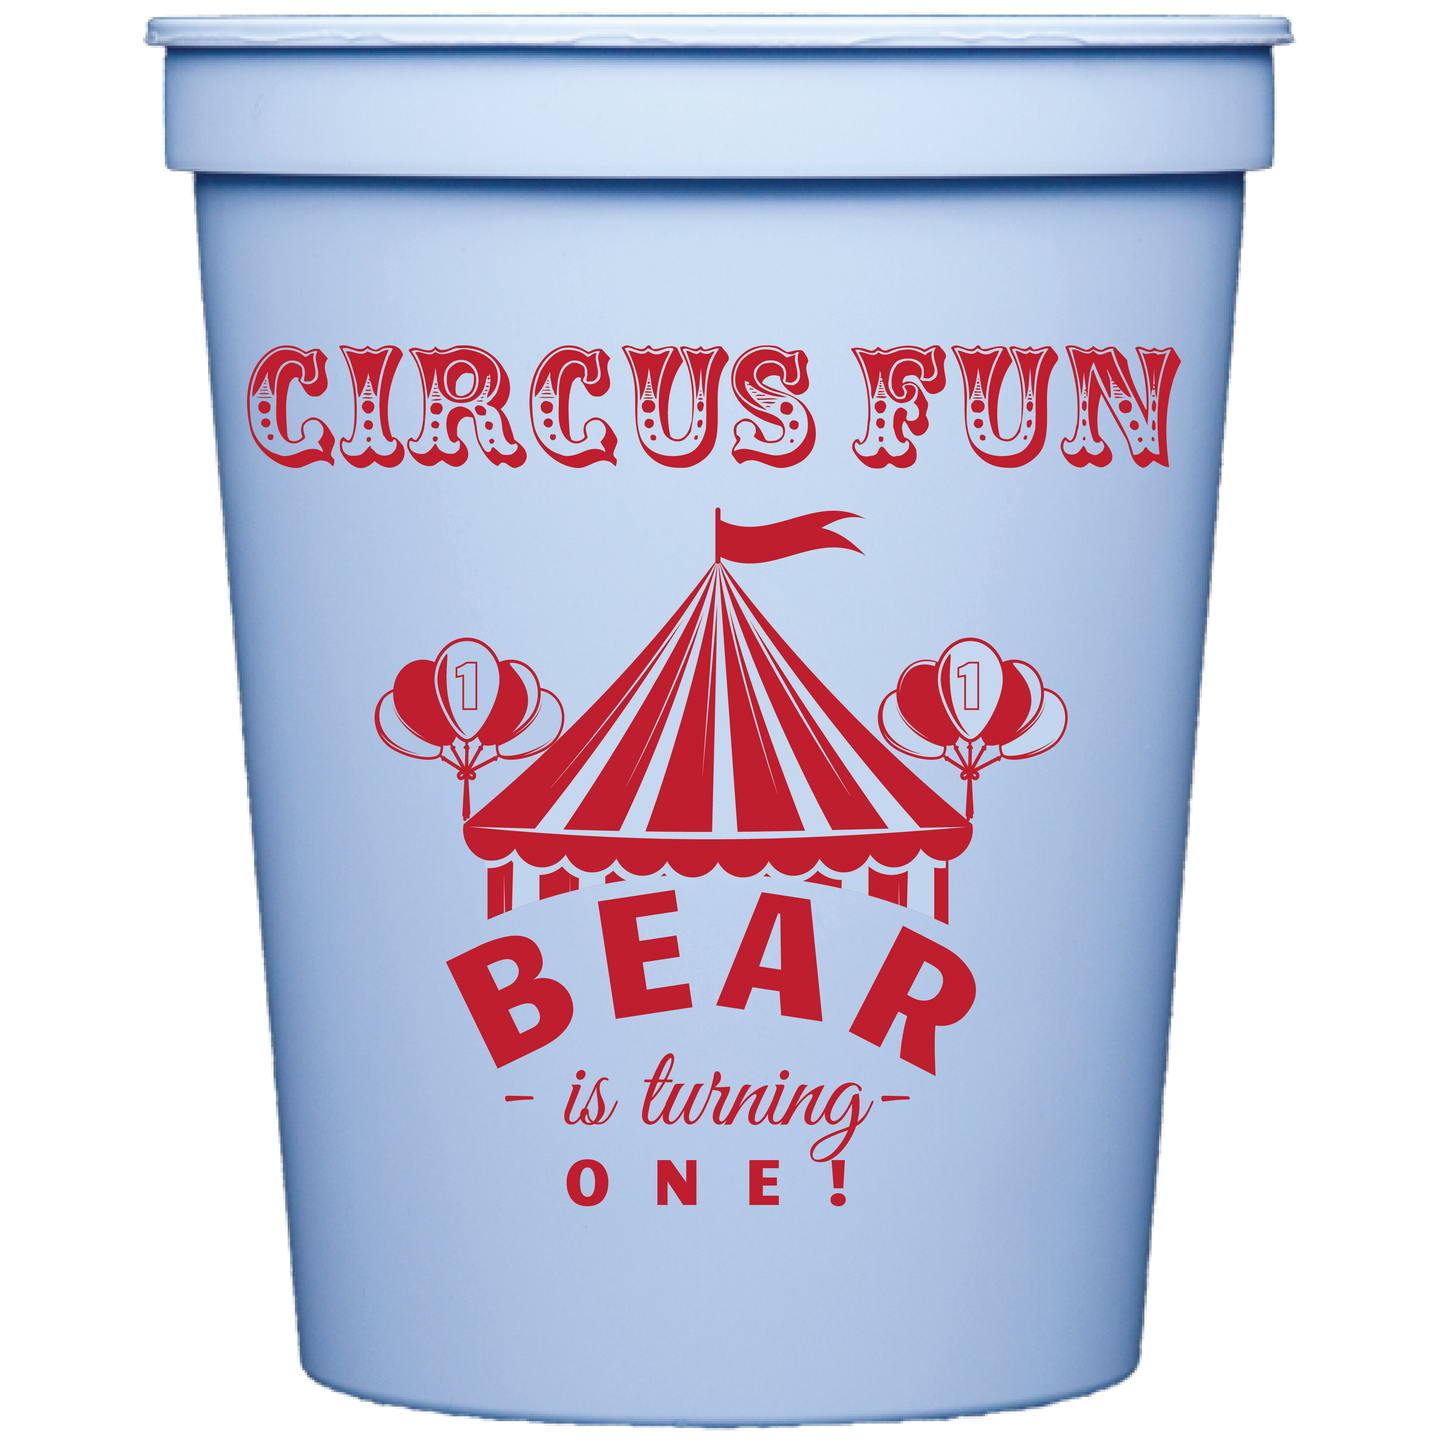 circus | stadium cups